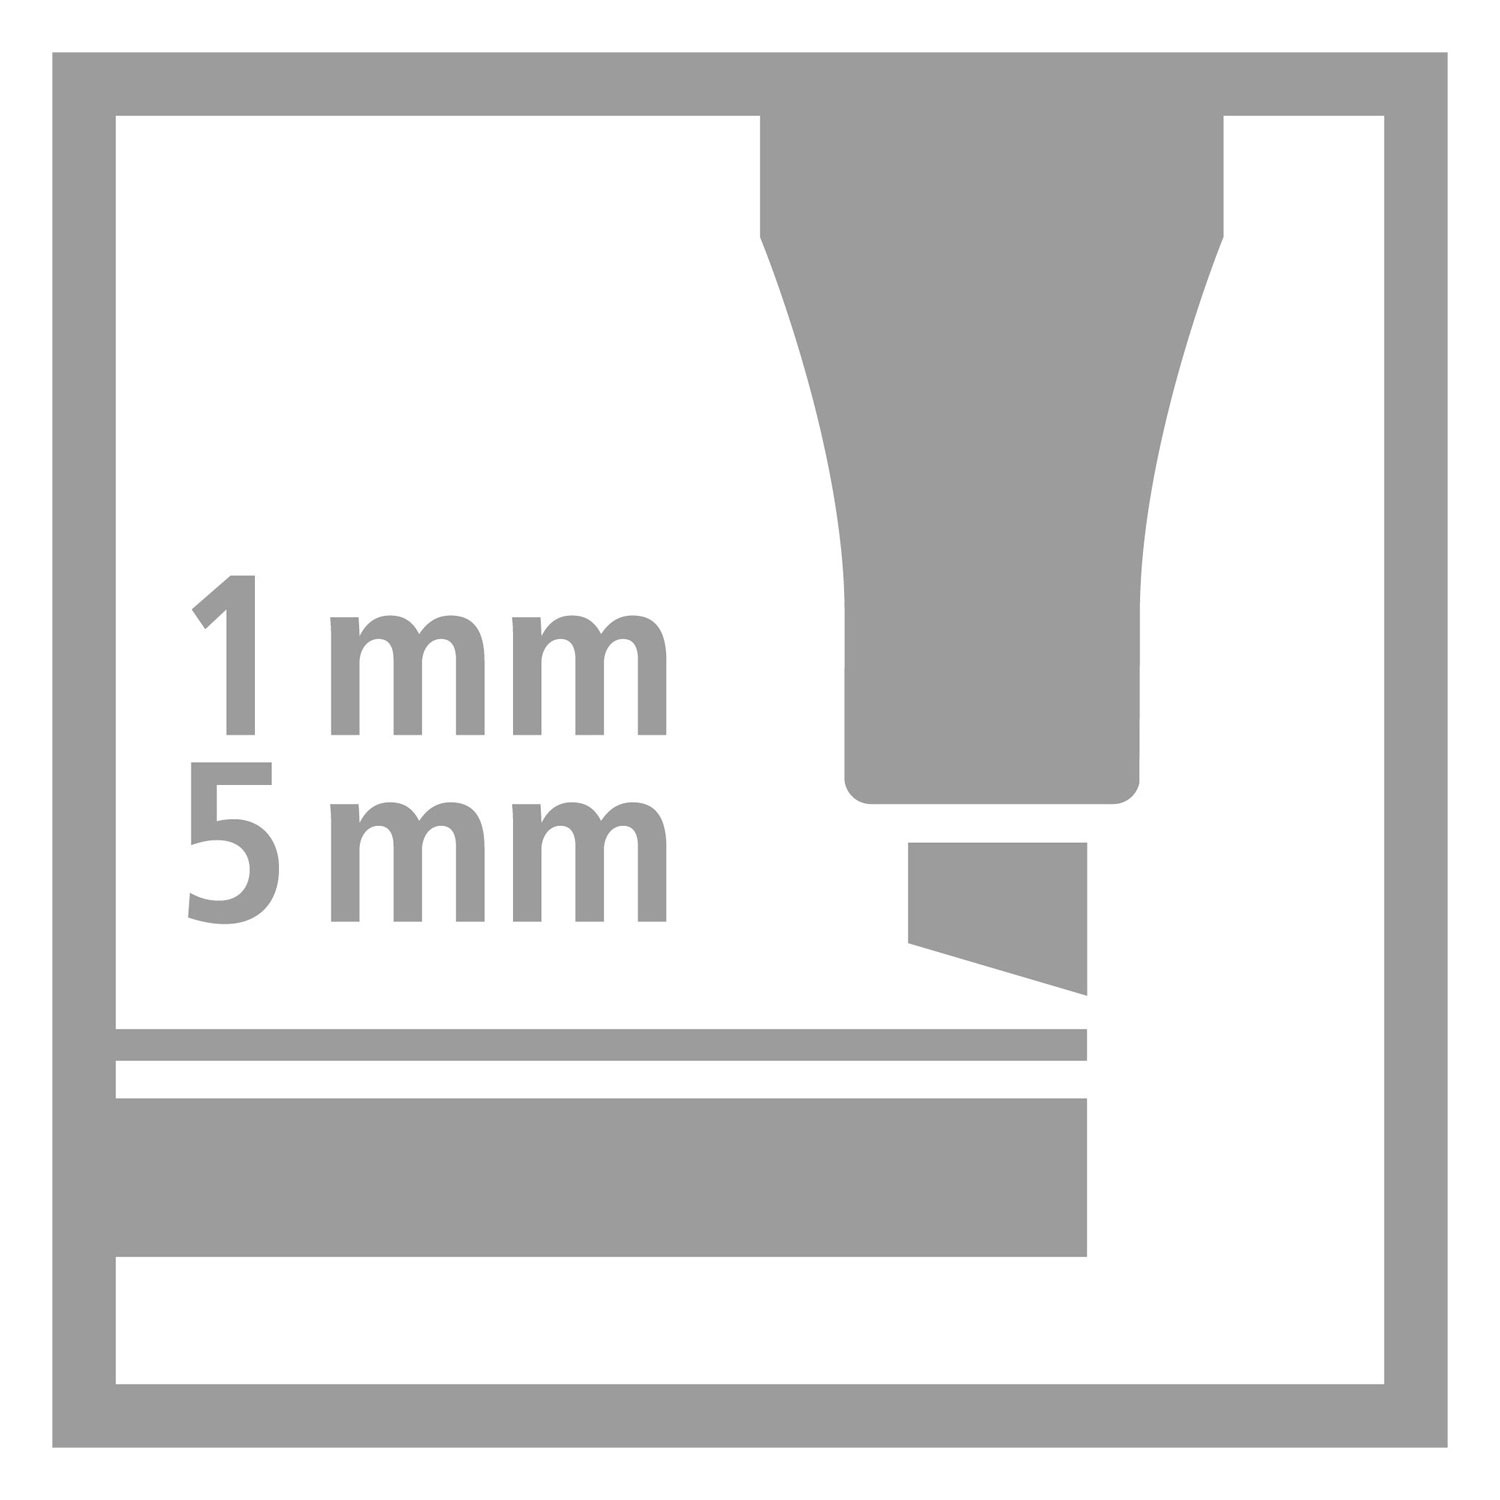 18 feutres pointe biseautée STABILO Pen 68 MAX ARTY - Surligneurs